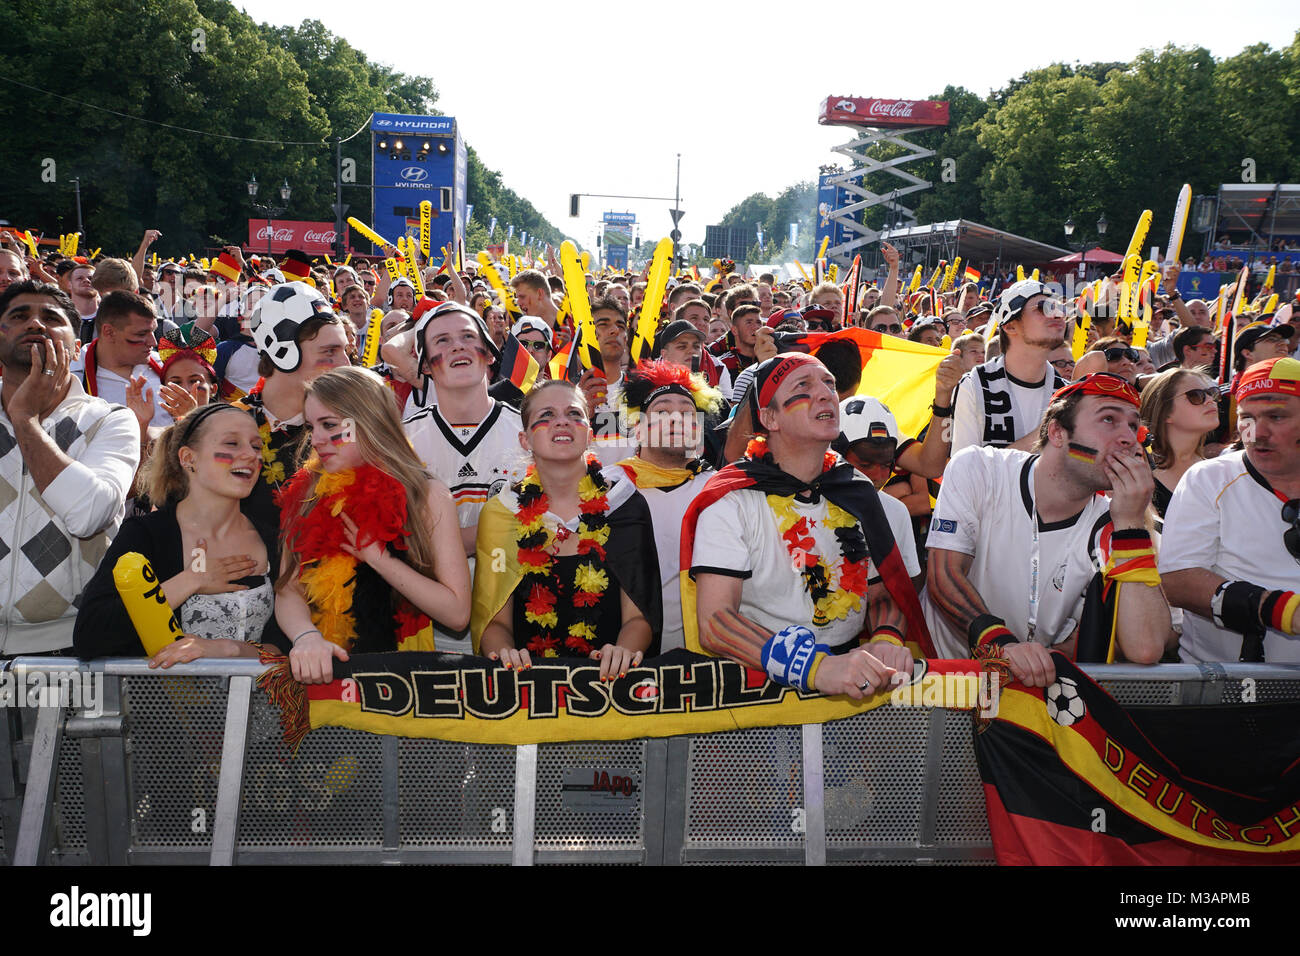 Public-Viewing beim Spiel Deutschland - Portugal auf der Berliner Fanmeile zur Fußball WM 2014 vorm Brandenburger Tor. Foto de stock